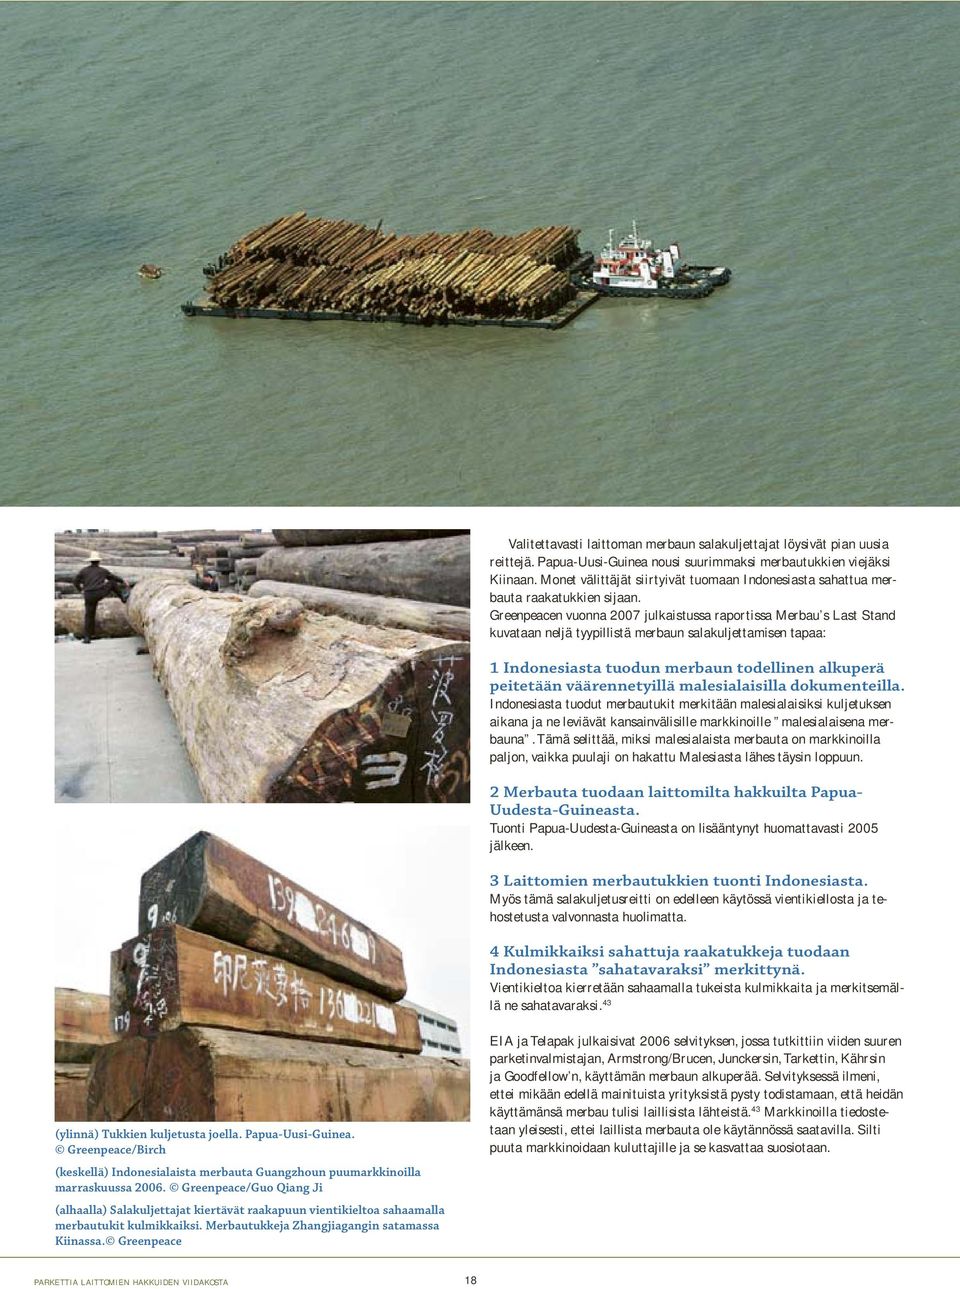 Greenpeacen vuonna 2007 julkaistussa raportissa Merbau s Last Stand kuvataan neljä tyypillistä merbaun salakuljettamisen tapaa: 1 Indonesiasta tuodun merbaun todellinen alkuperä peitetään